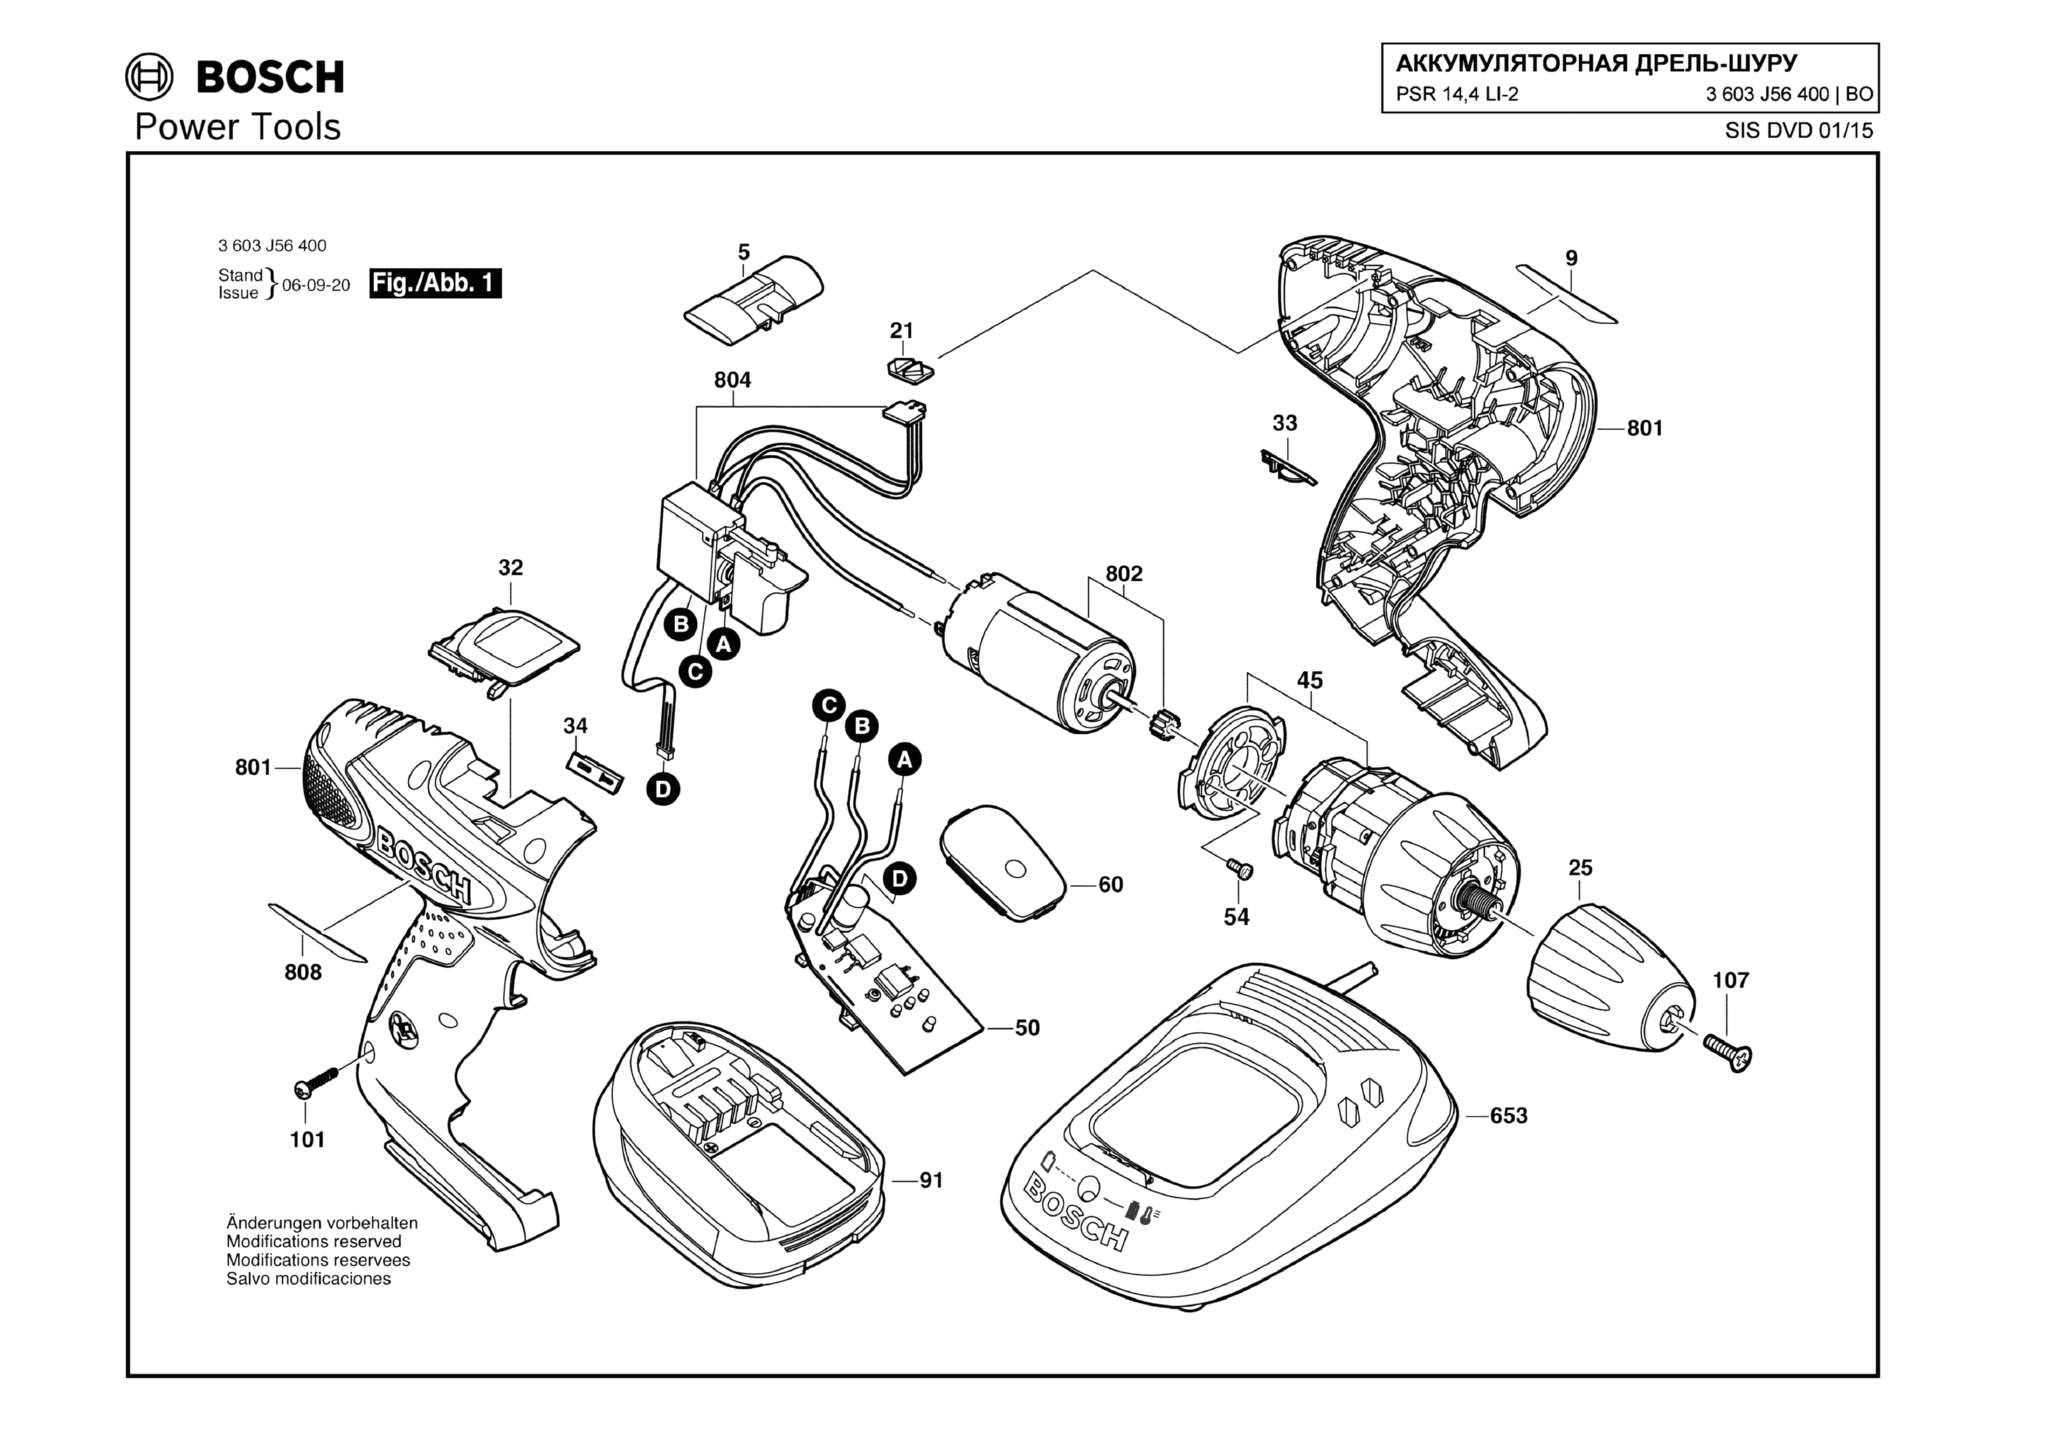 Запчасти, схема и деталировка Bosch PSR 14,4 LI-2 (ТИП 3603J56400)